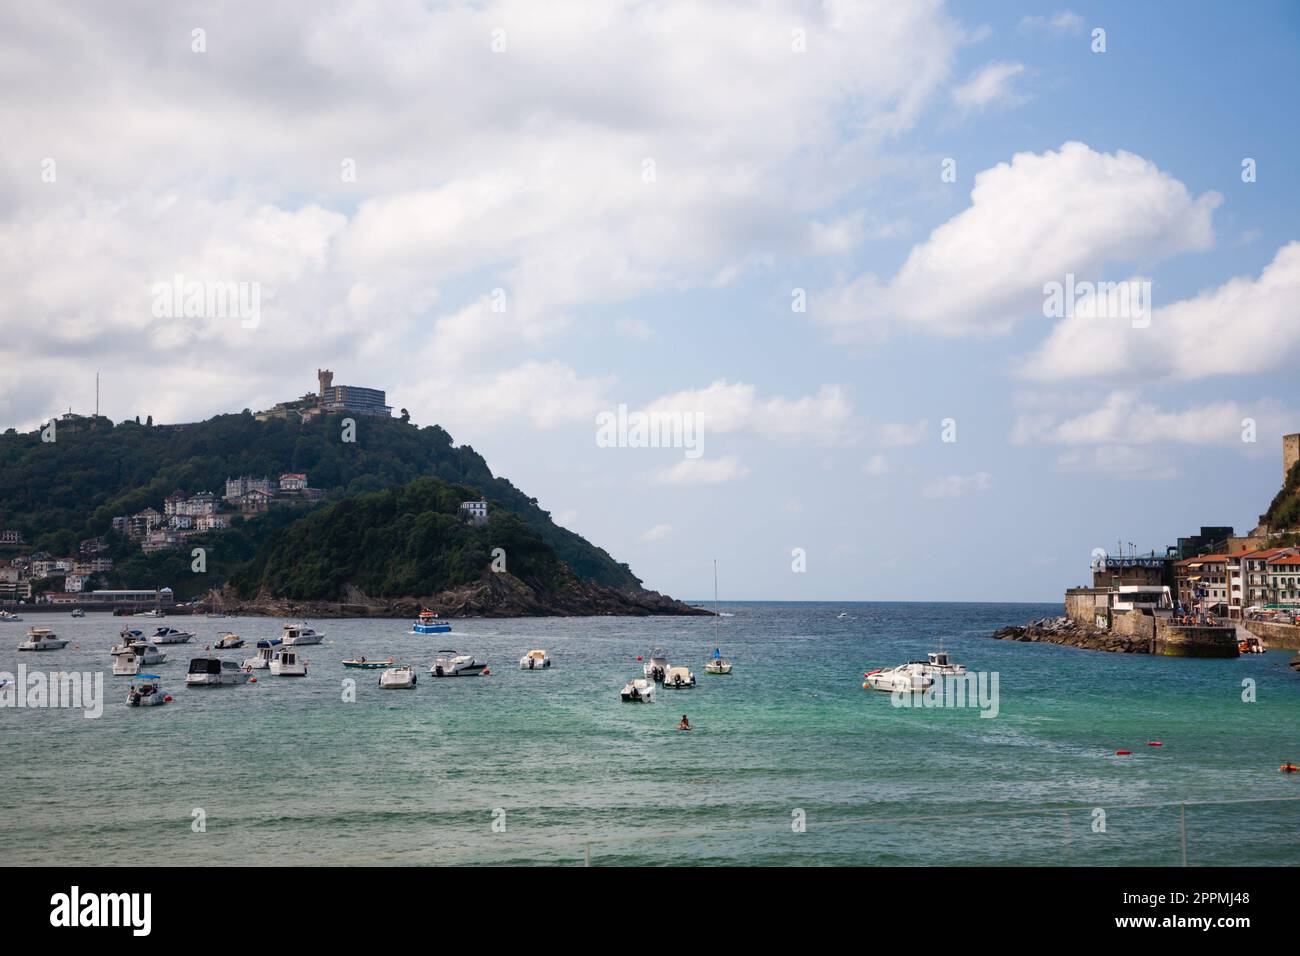 San sebastian beach summer view, Spain Stock Photo